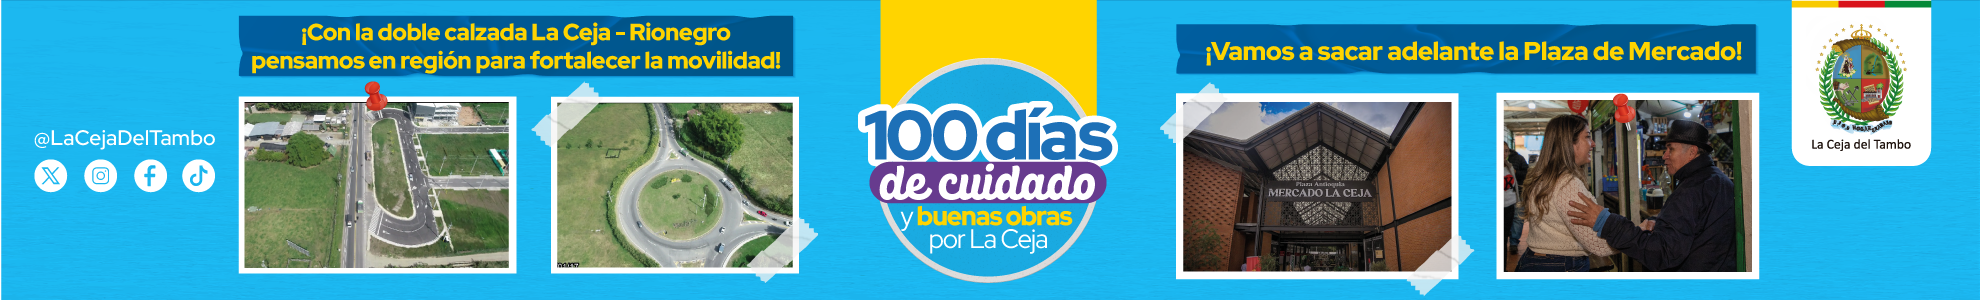 100 días de cuidado y buenas obras por La Ceja